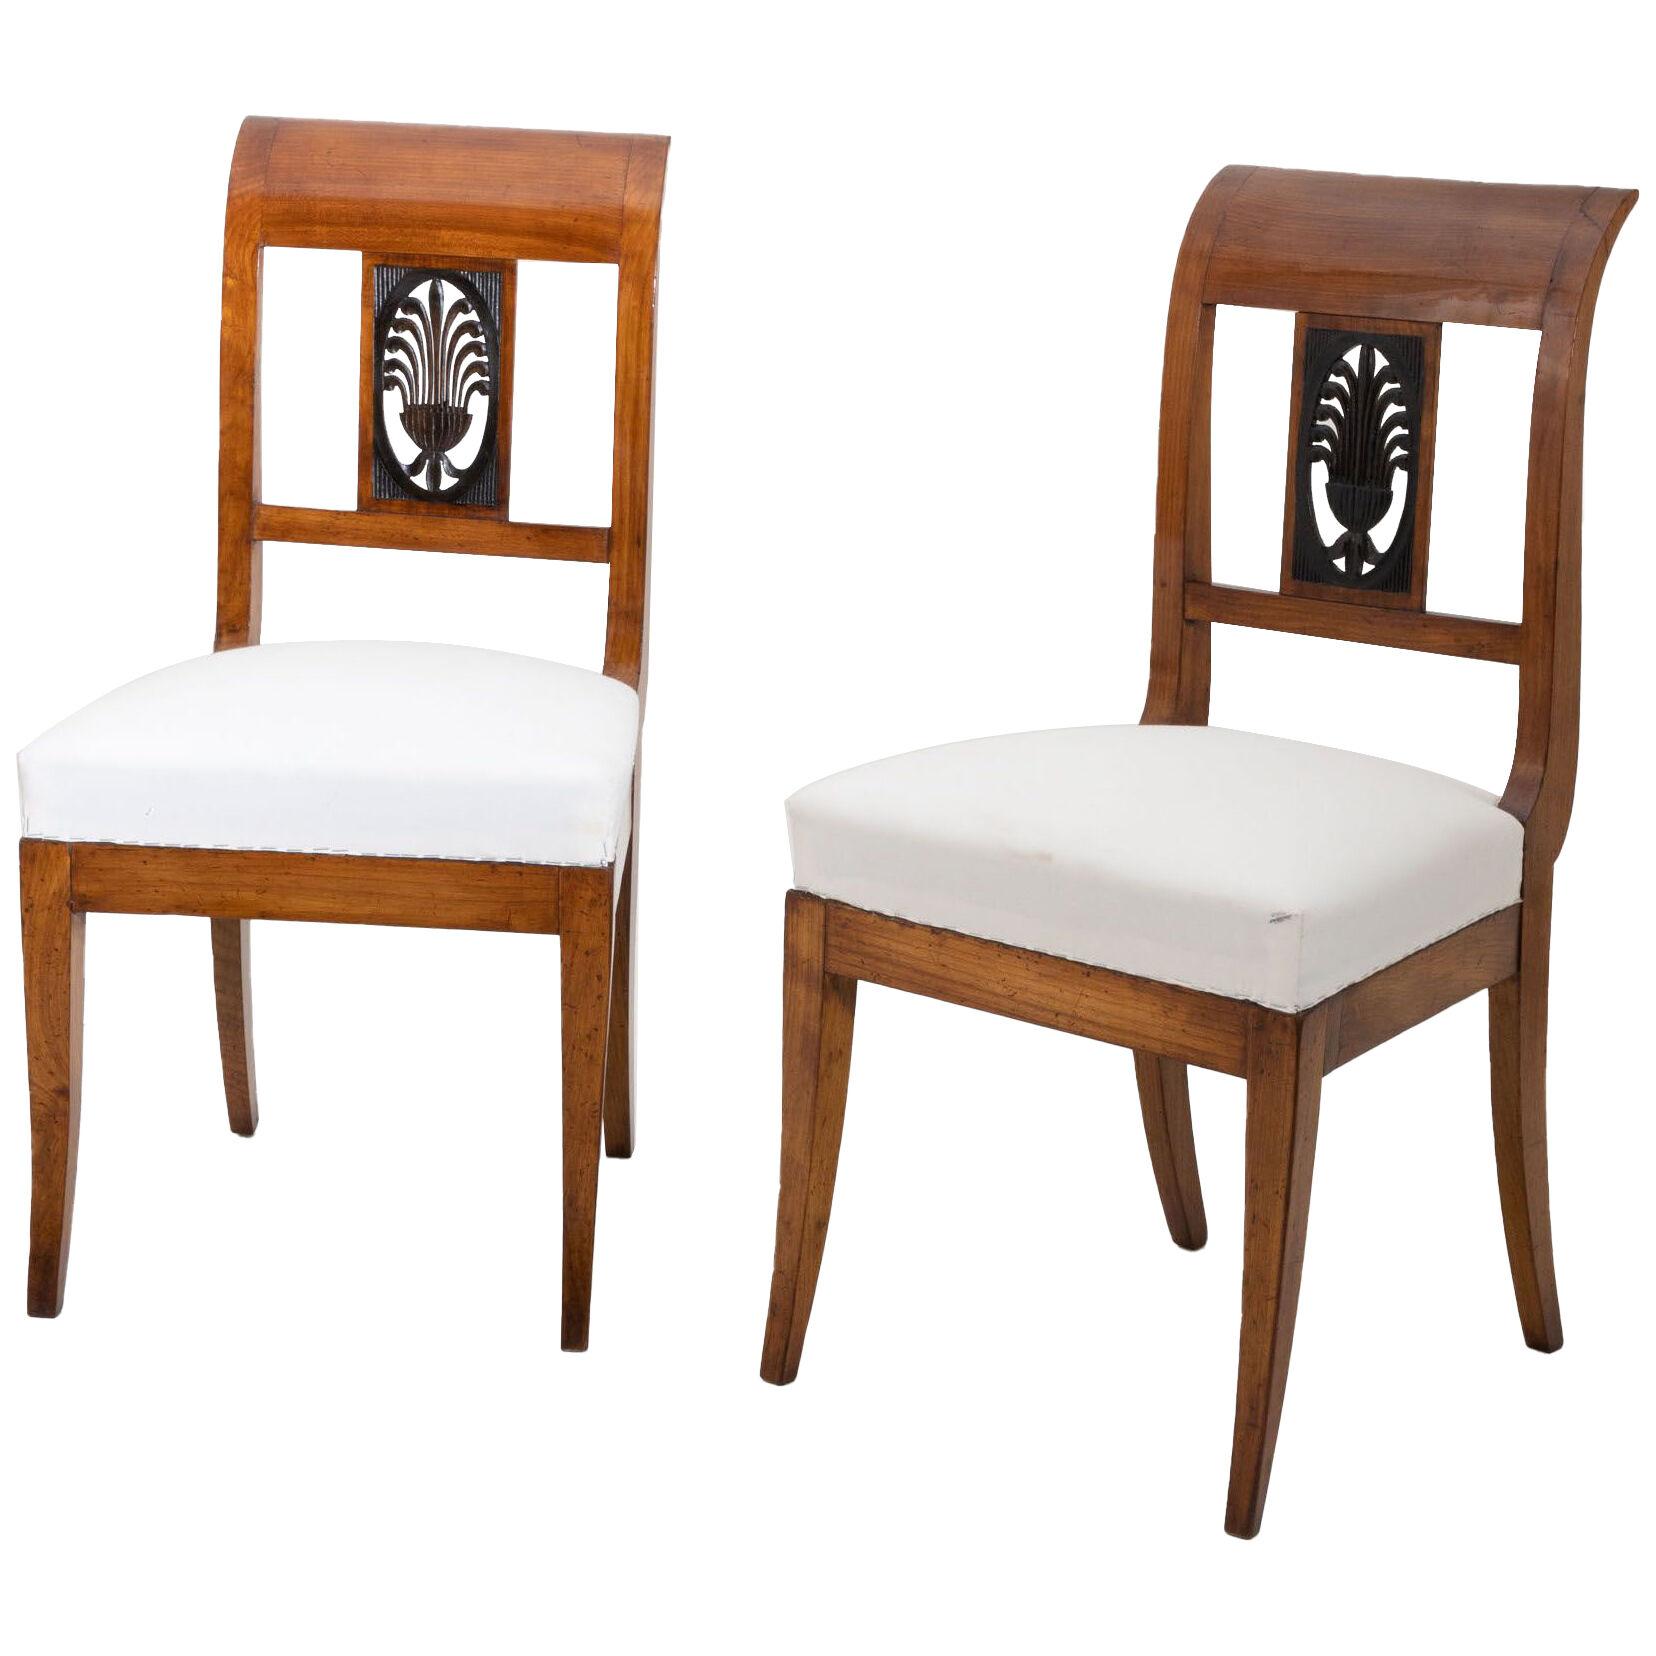 Pair of Biedermeier Chairs in Cherrywood, Early 19th Century